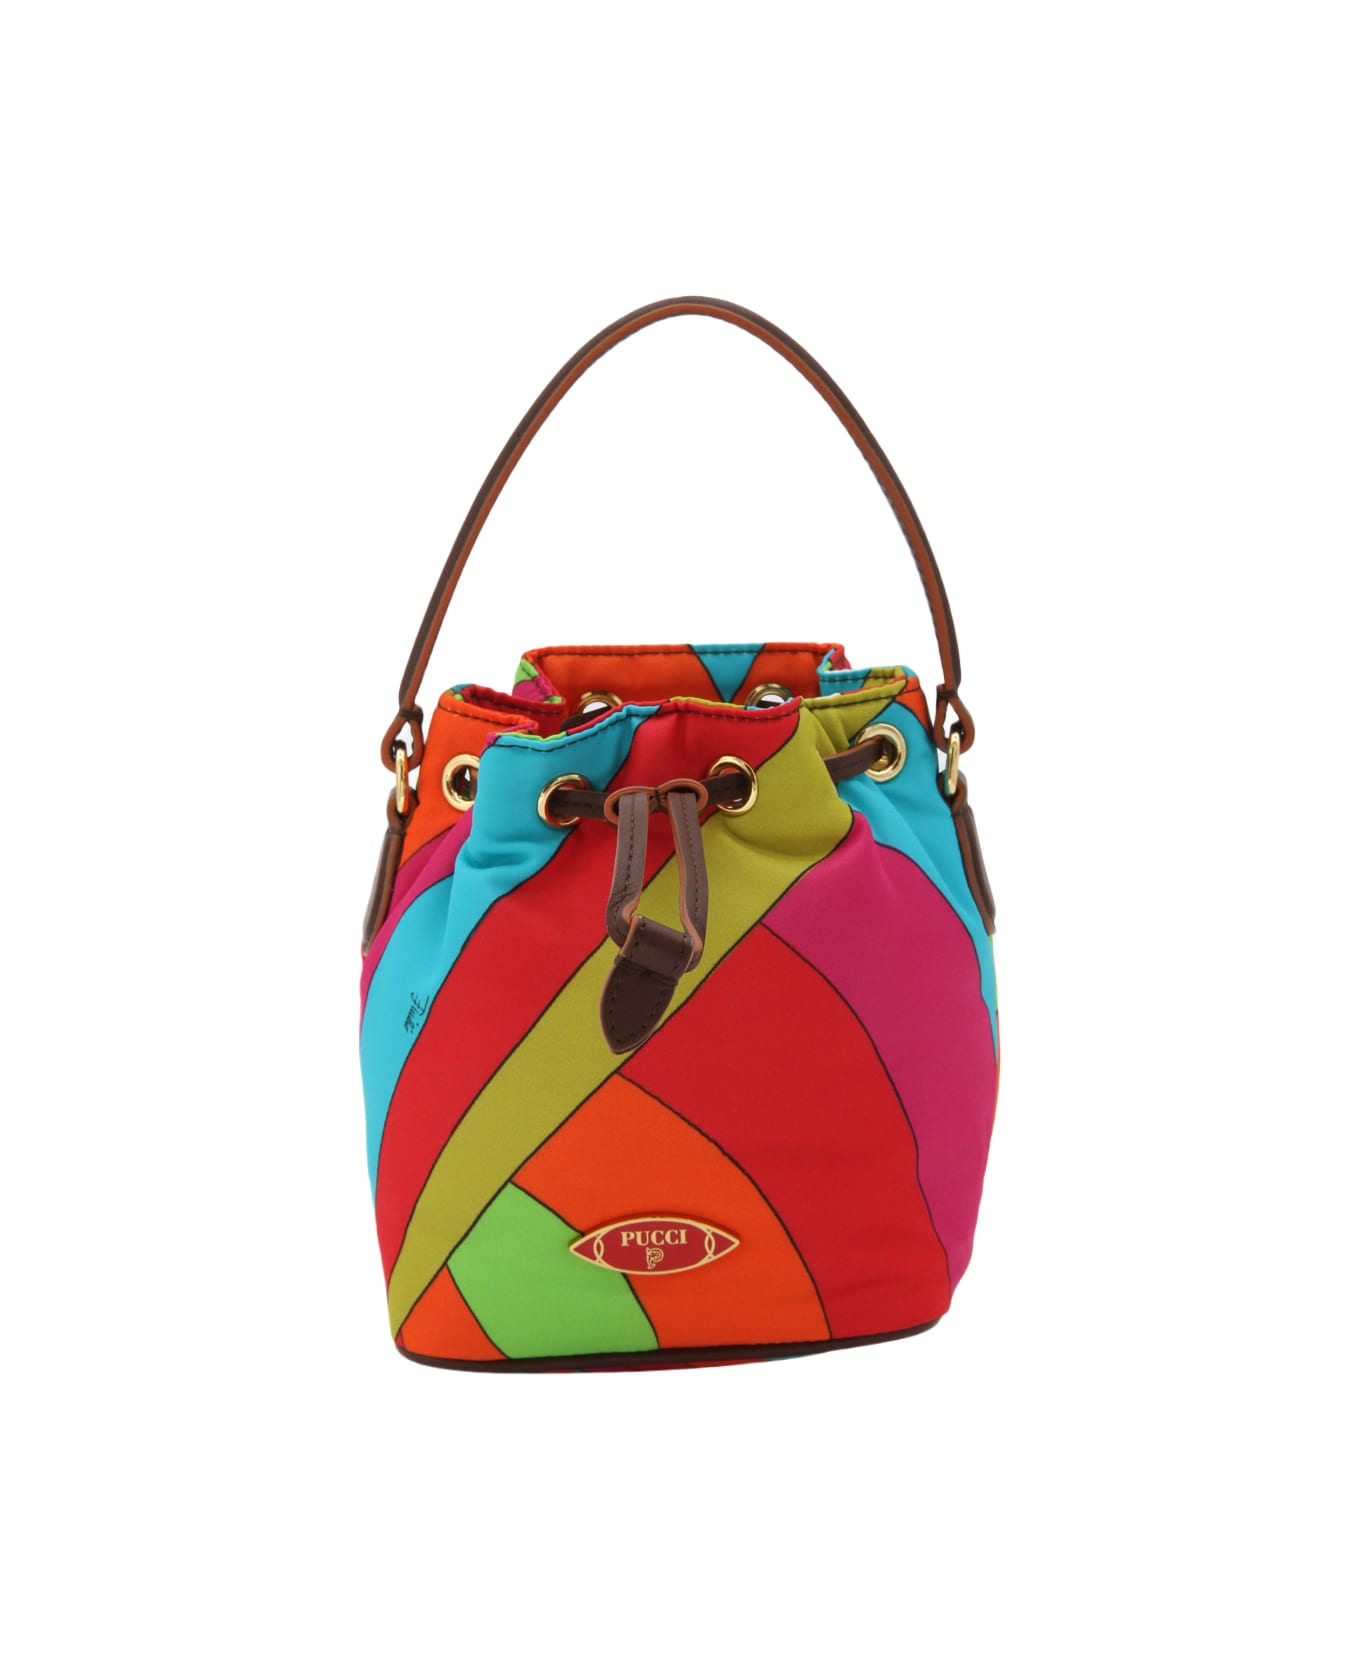 Pucci Multicolor Yummy Bucket Bag - ARANCIO/FUXIA